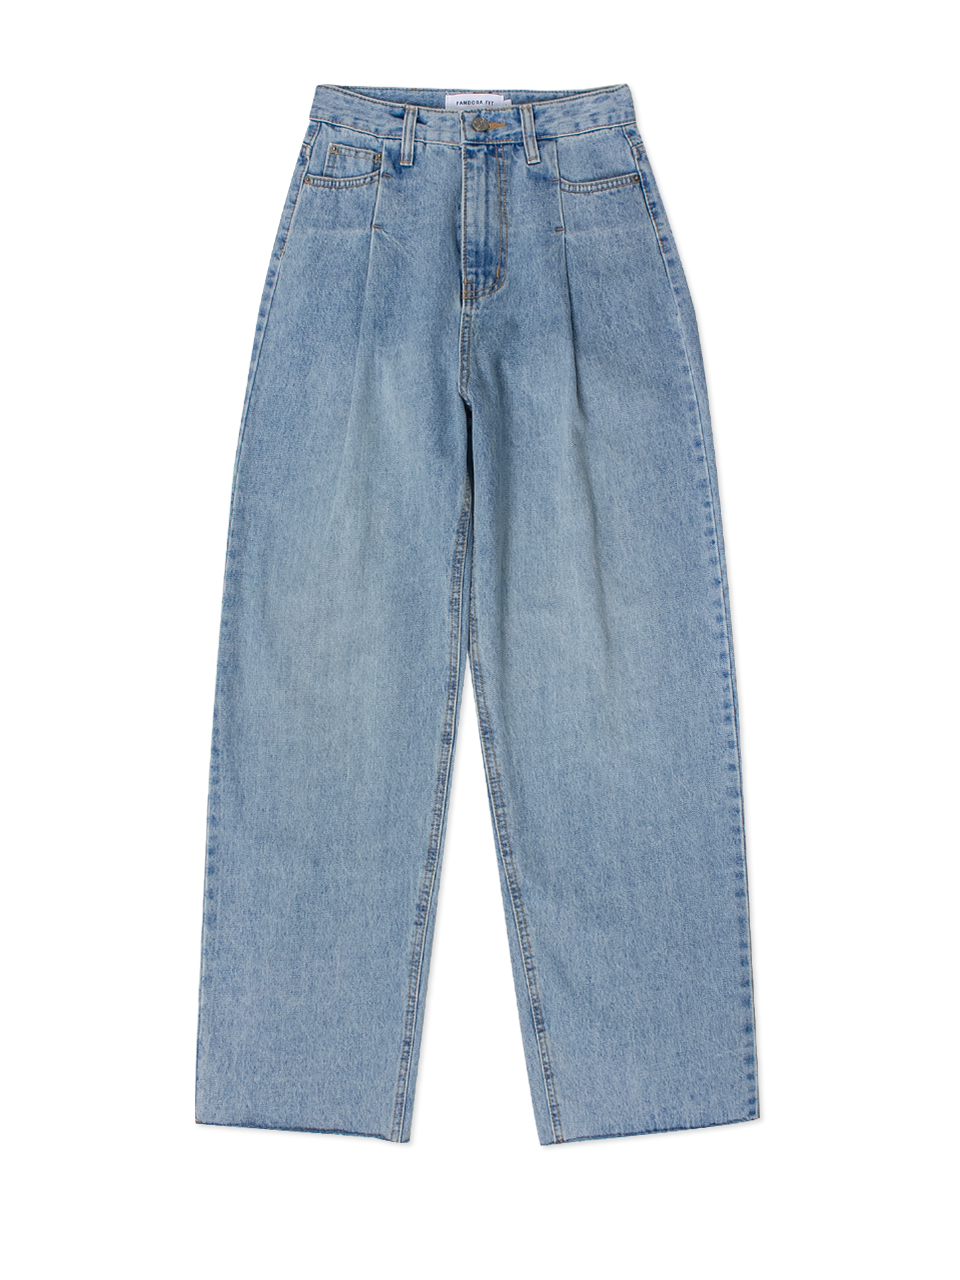 [WIDE] Yolo Jeans